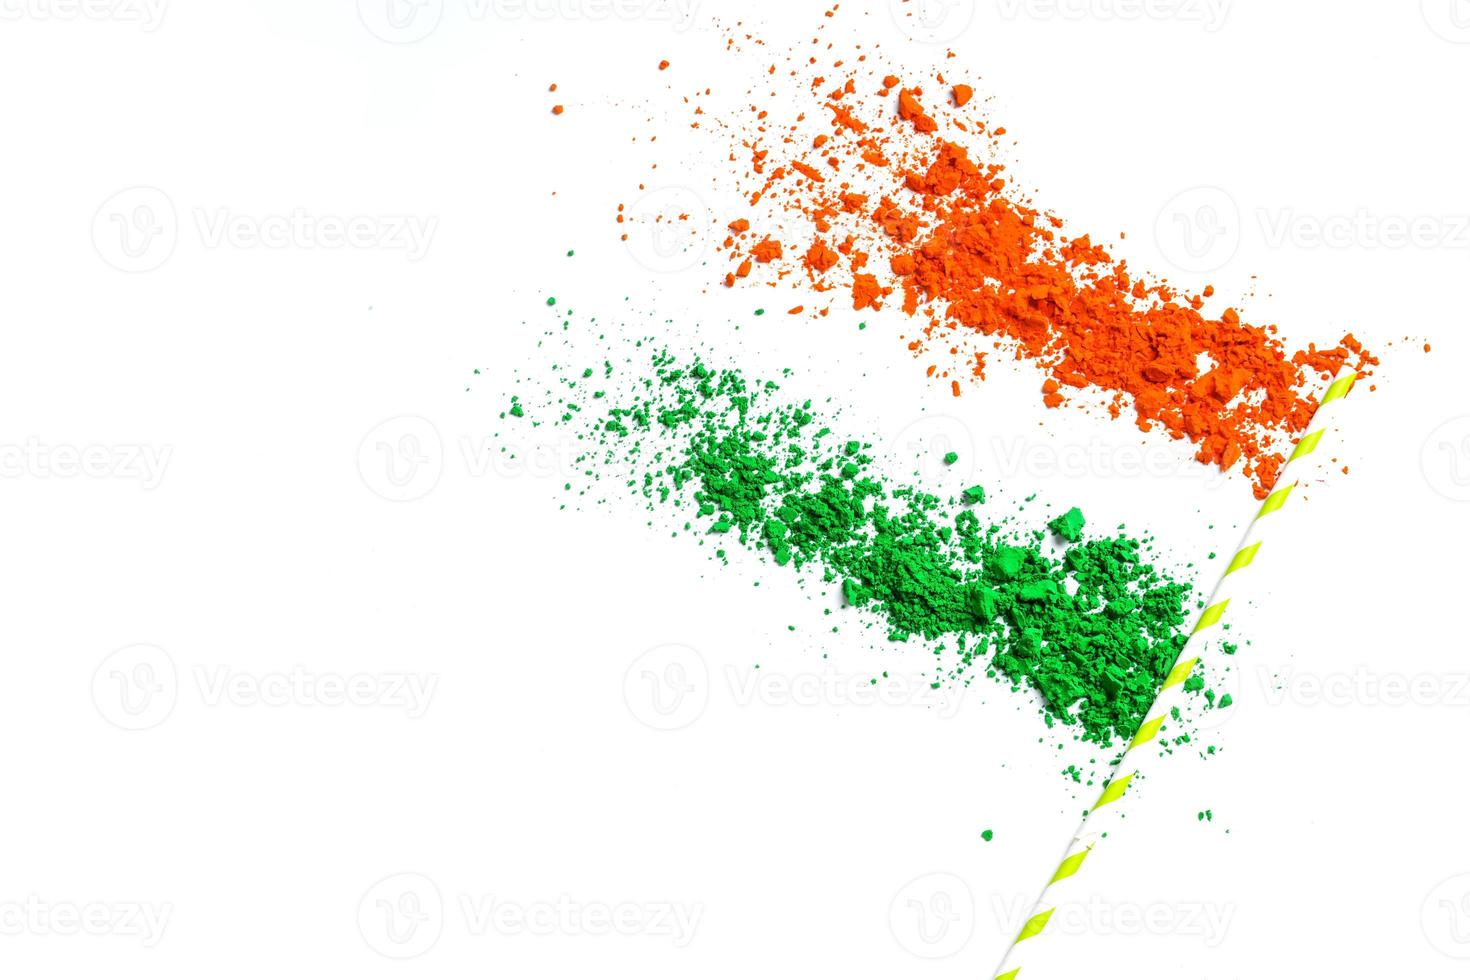 conceito para o dia da independência indiana e dia da república tricolor em fundo branco foto